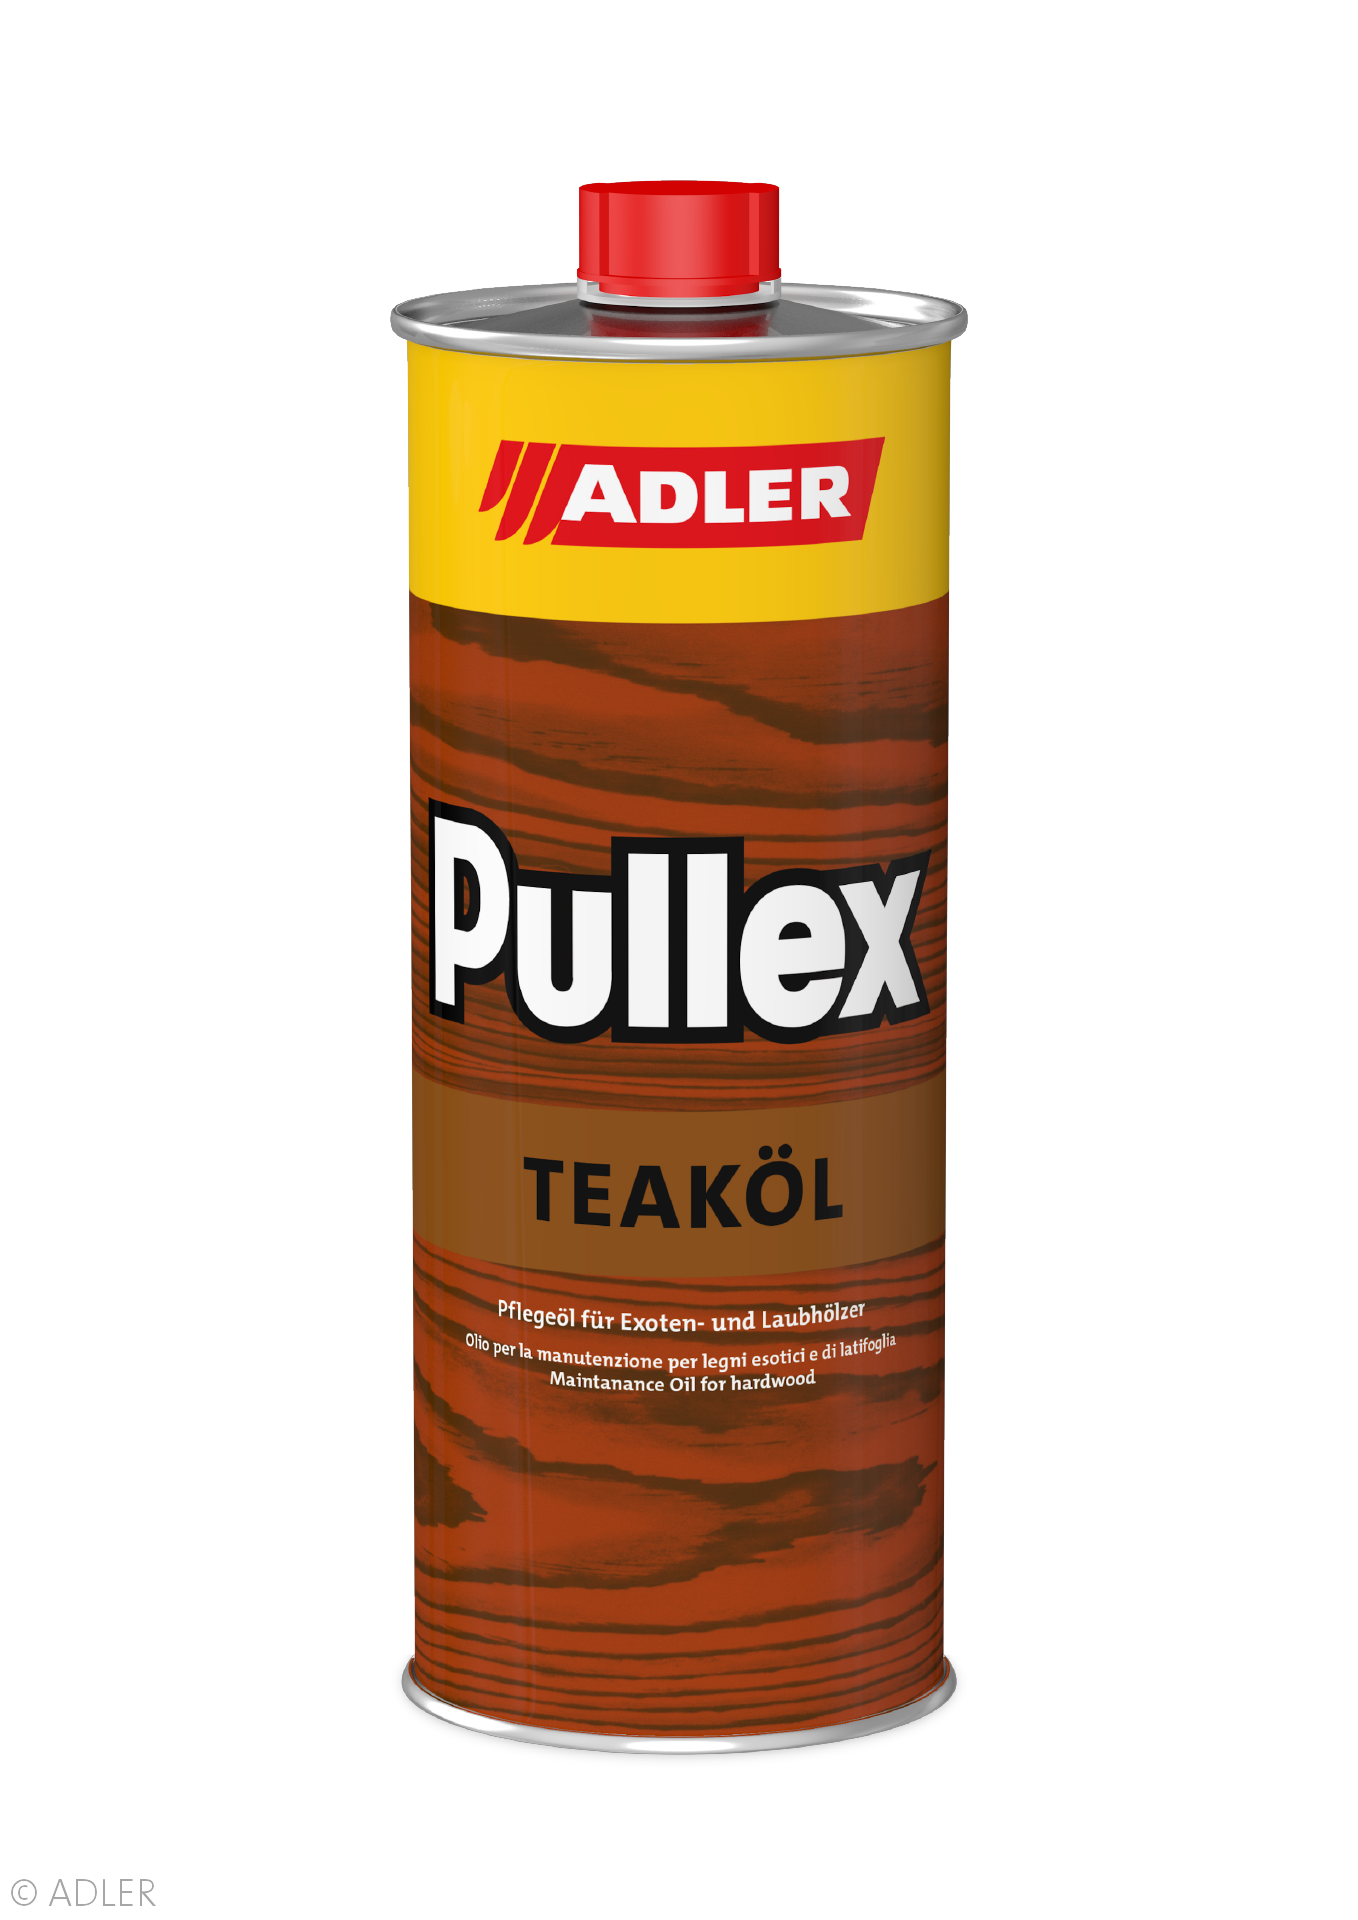 Adler Pullex Teaköl